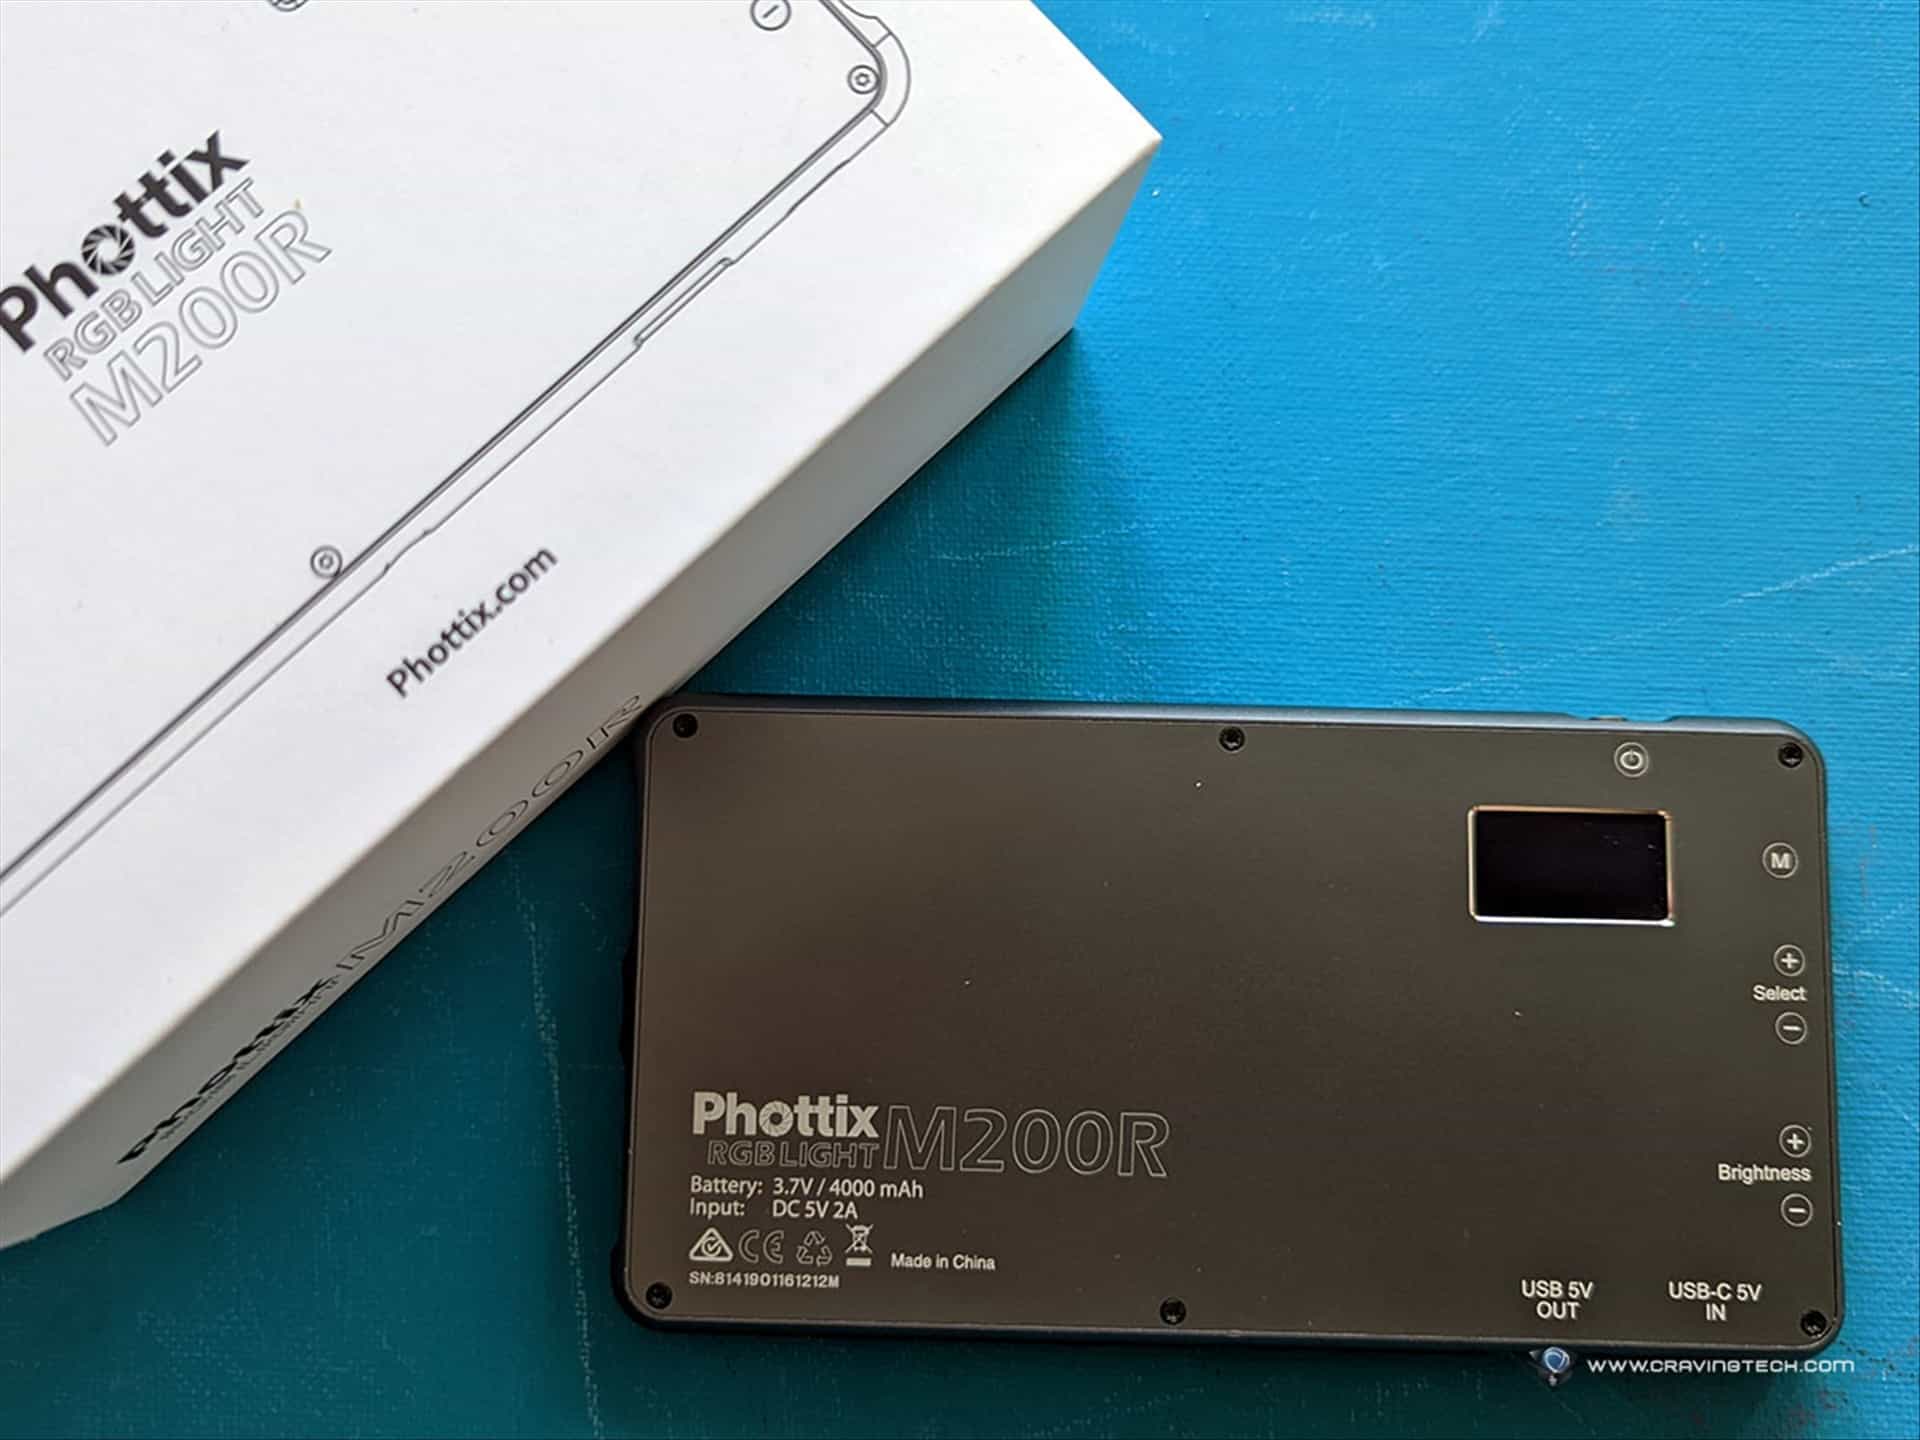 Phottix RGB Light M200R Review